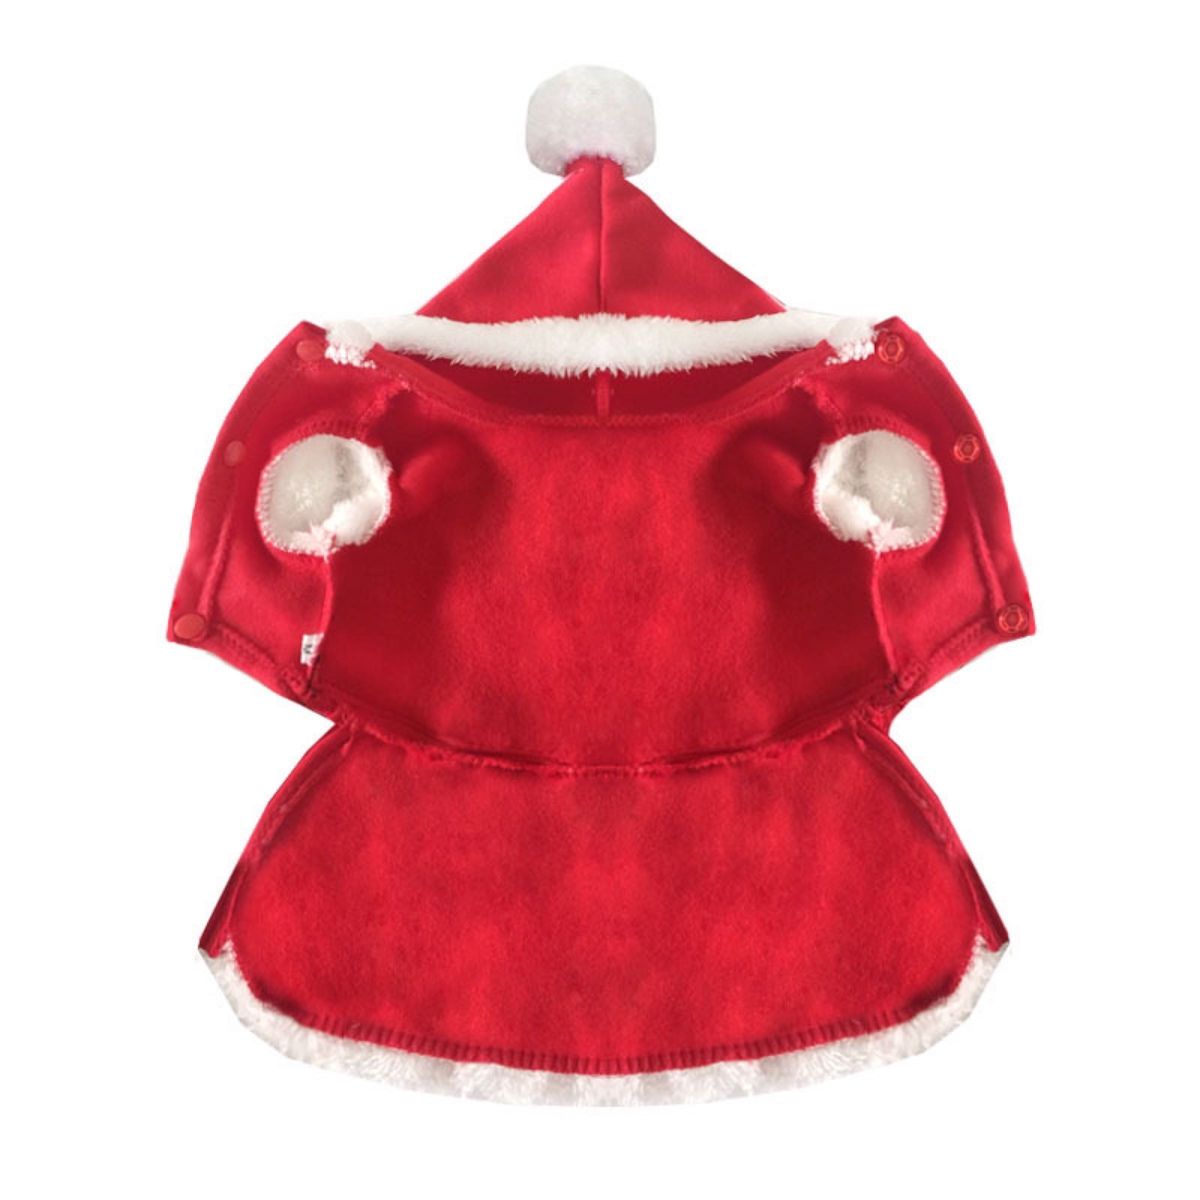 クリスマス 犬  猫 服 サンタクロース仮装 秋冬用 トイプードル ペット 赤い厚いドレスかわいい子犬ホリデー 赤 レッド 犬服